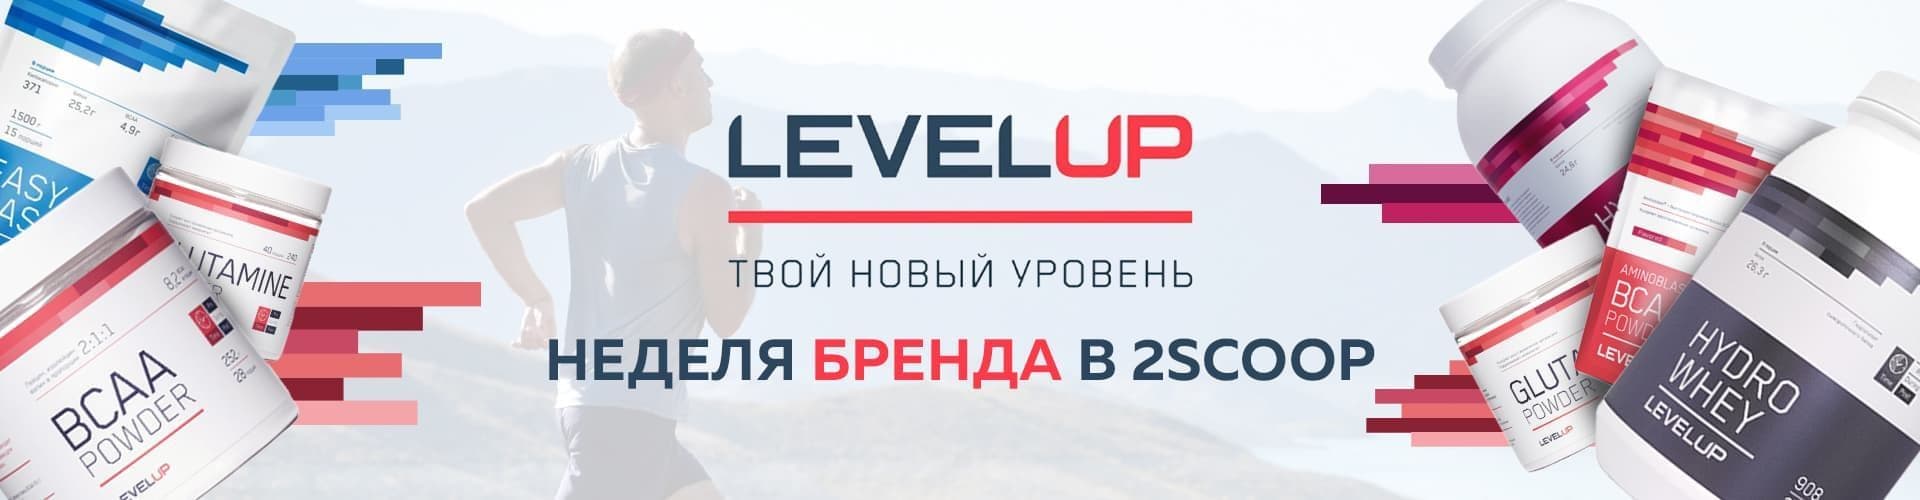 Level up 20%